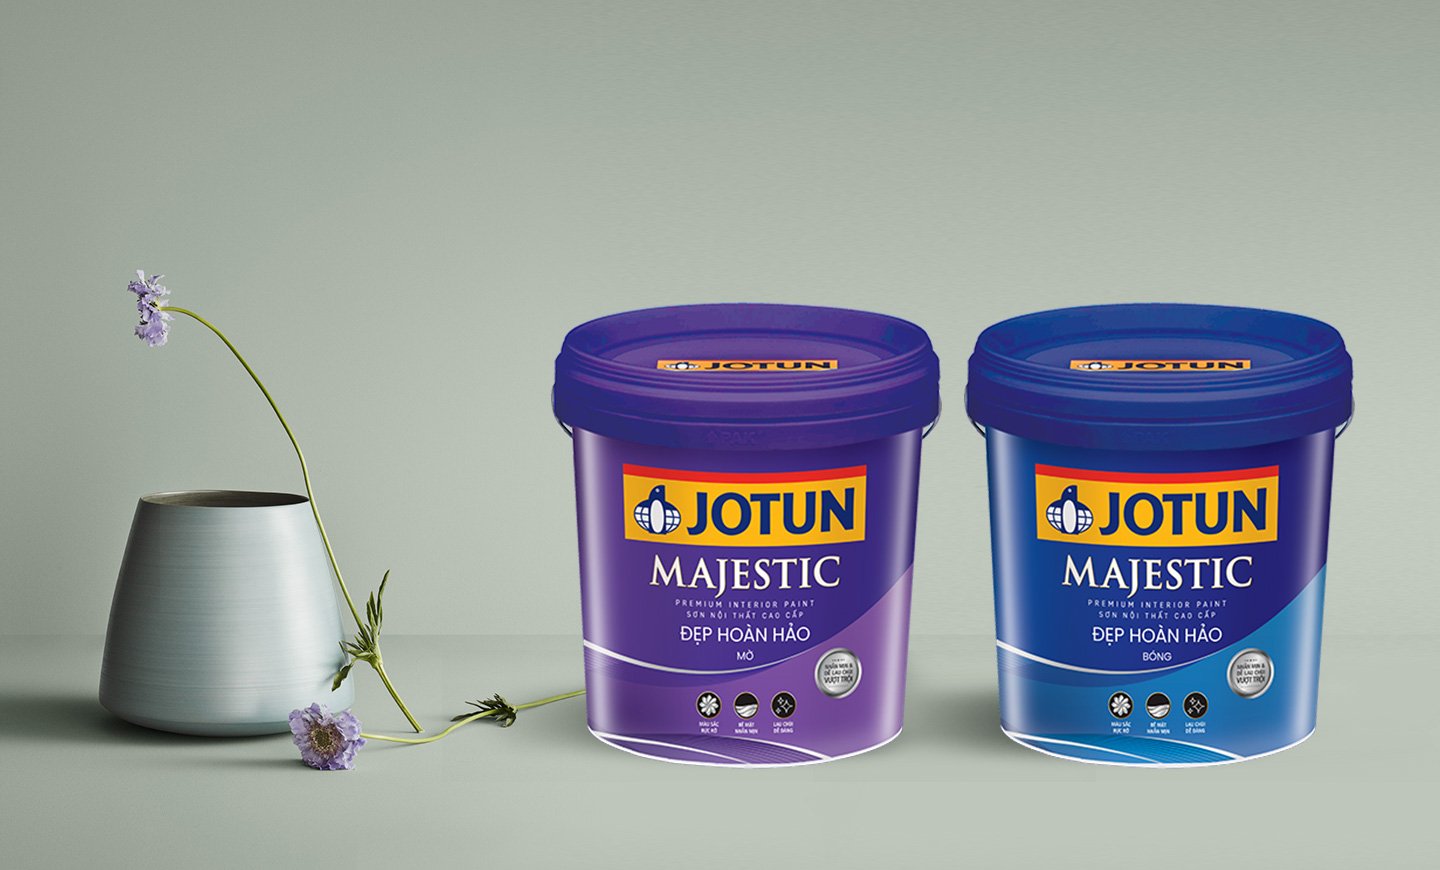 Jotun Products